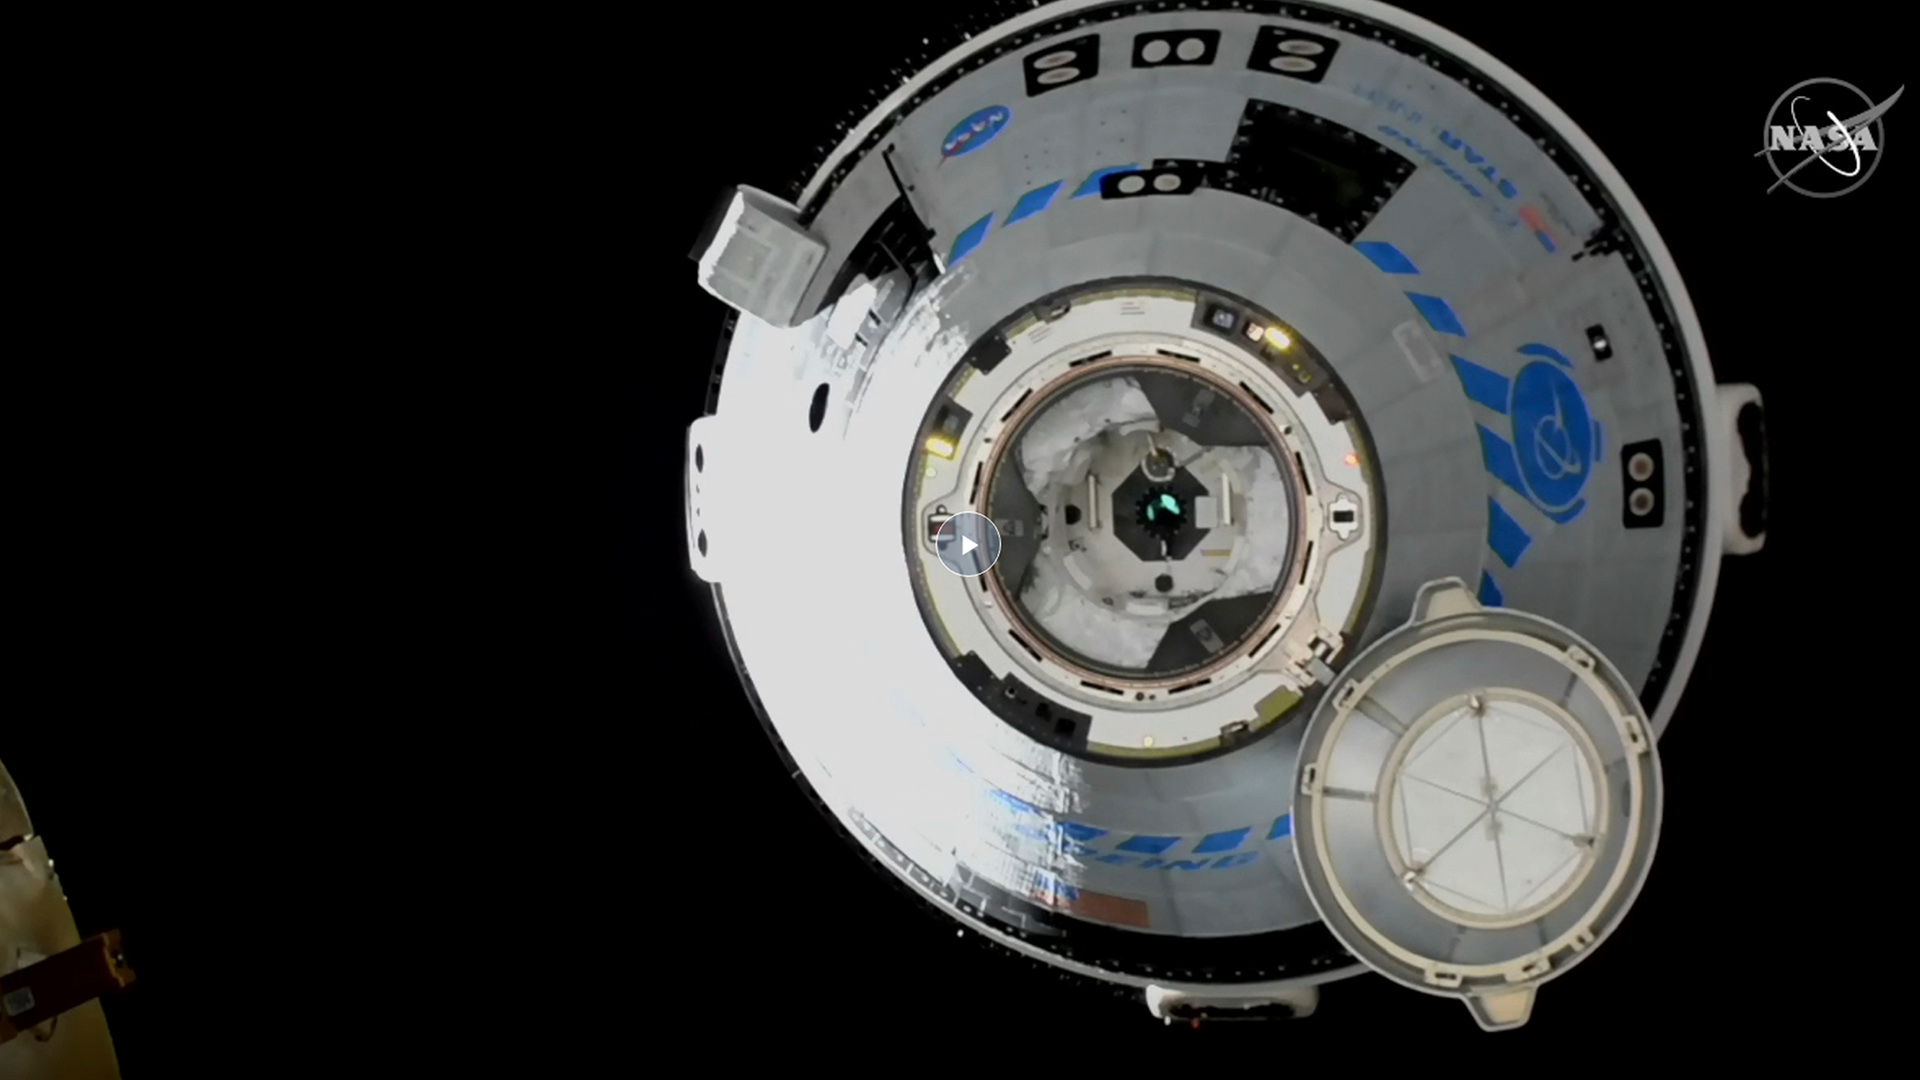 Boeing-ruimtecapsule: “Starliner” arriveert voor het eerst in het internationale ruimtestation